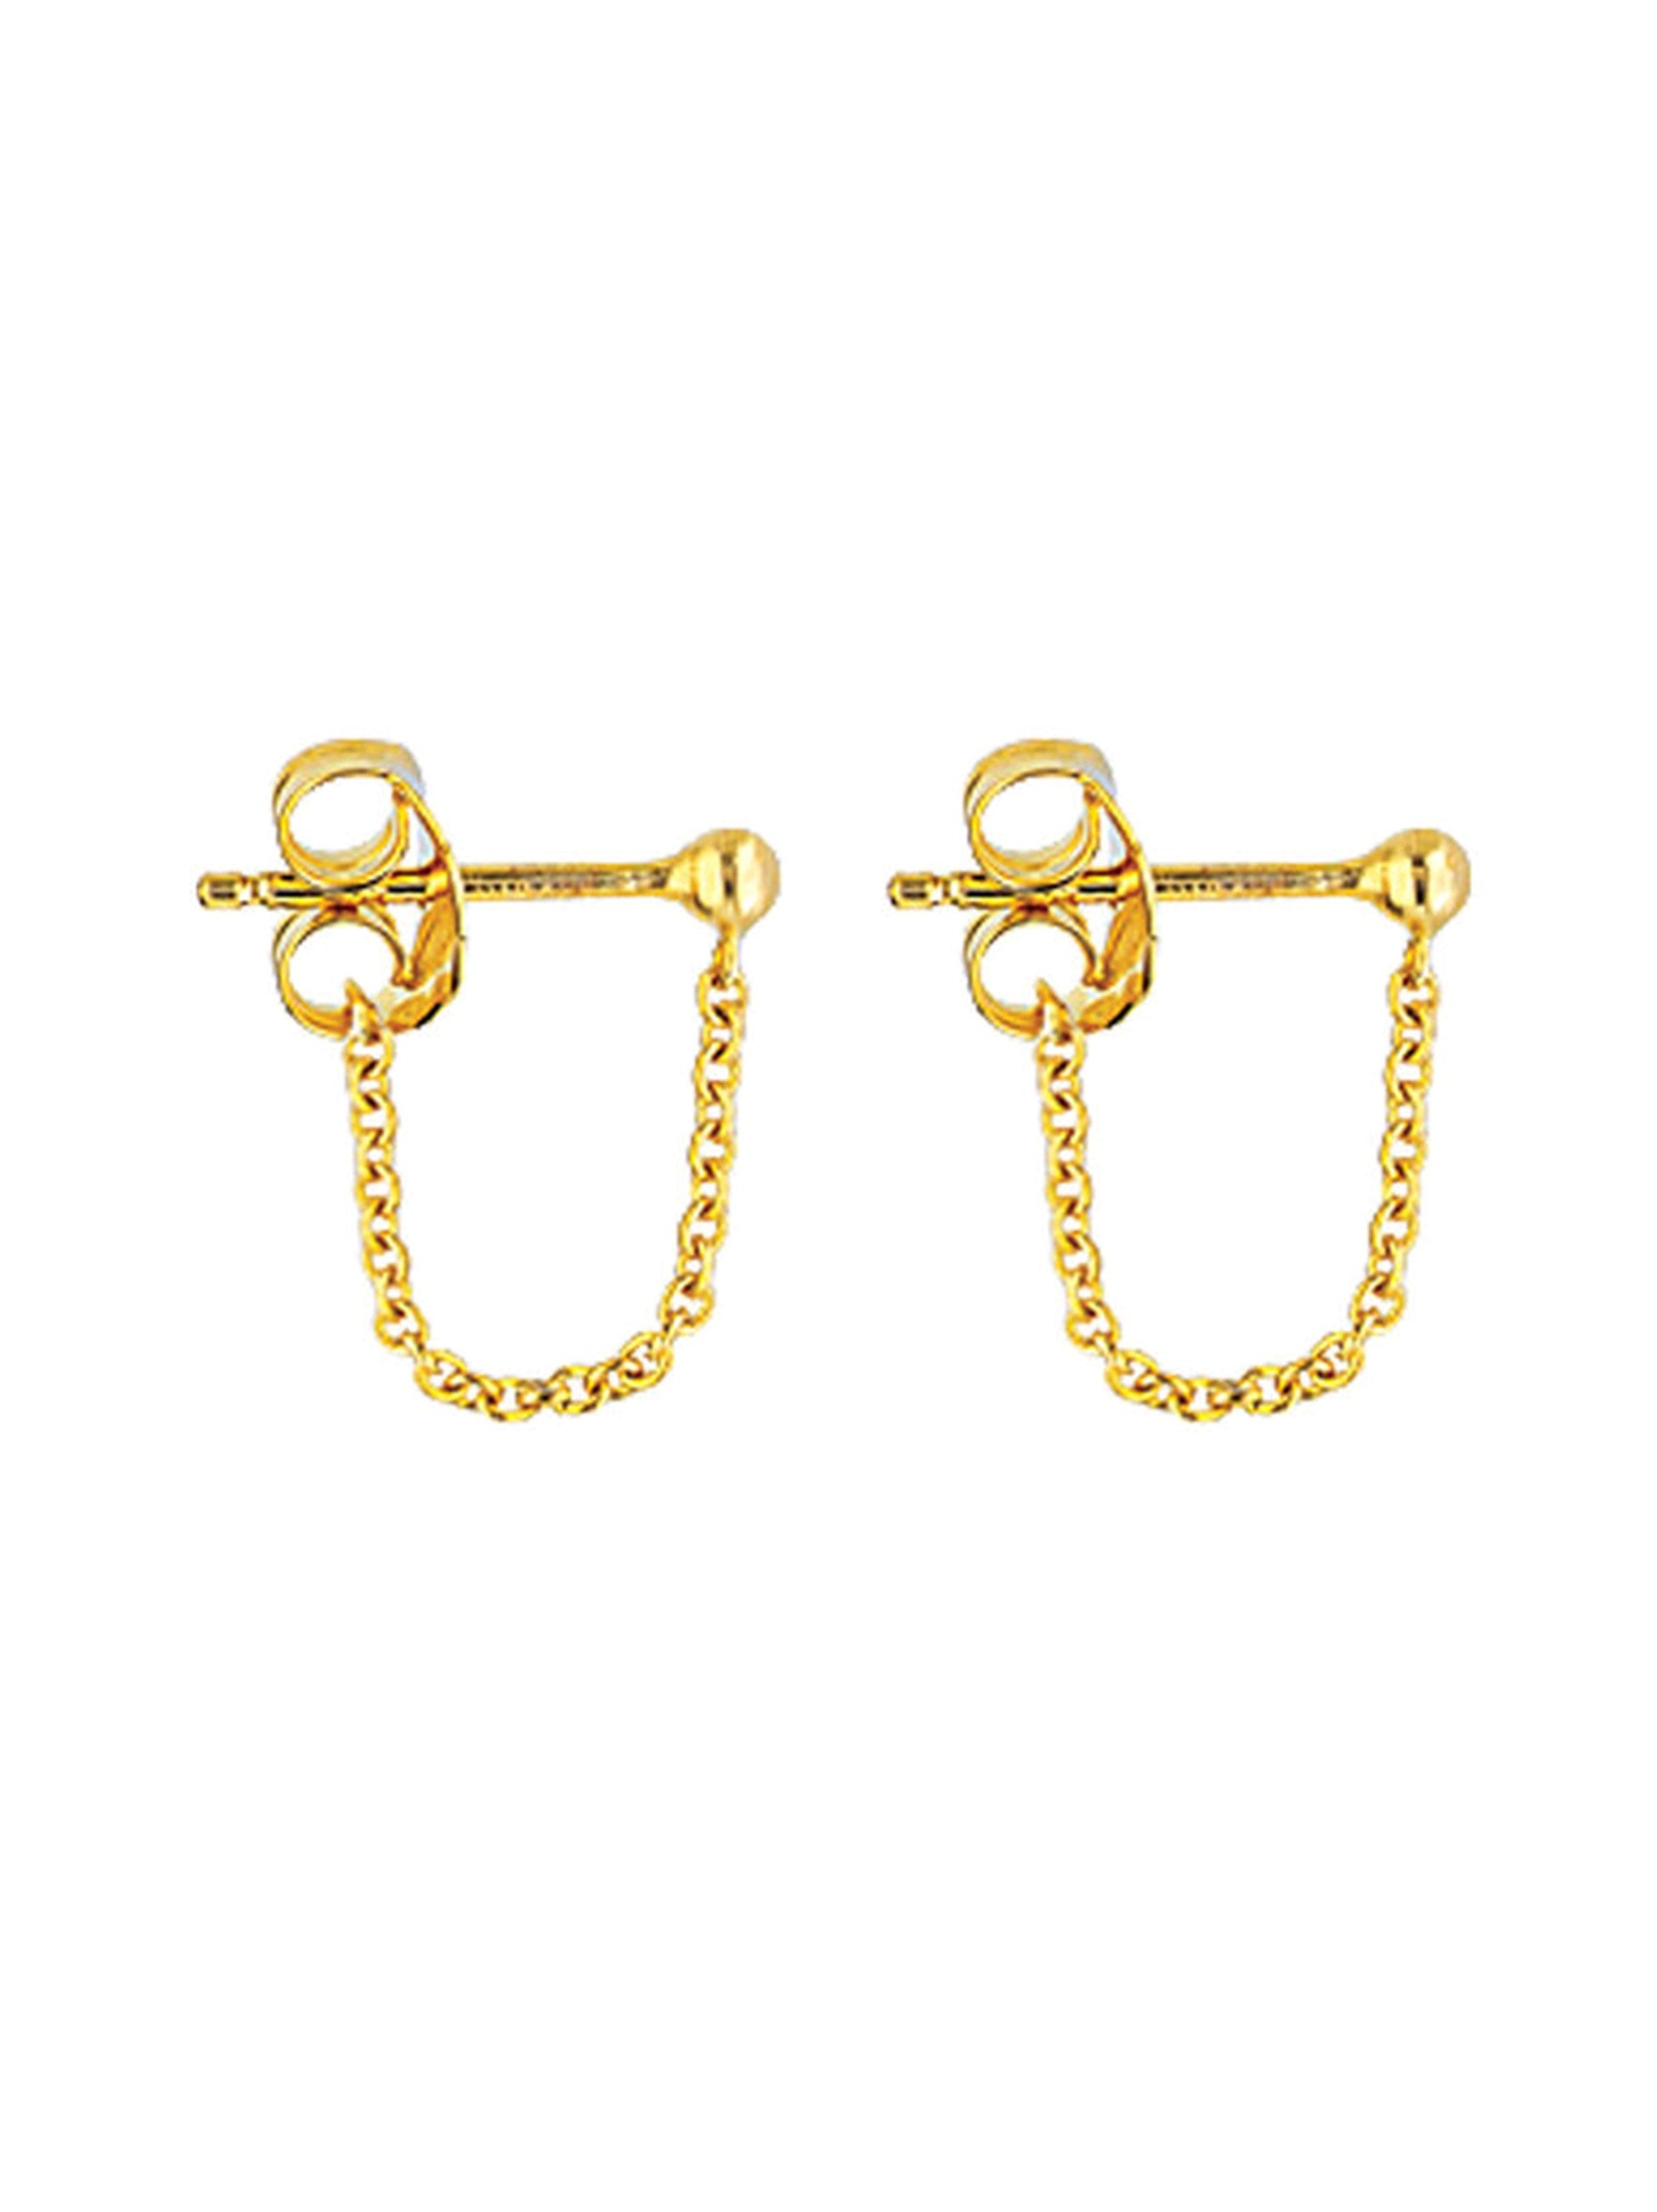 Dangle Earrings - Gold Earrings